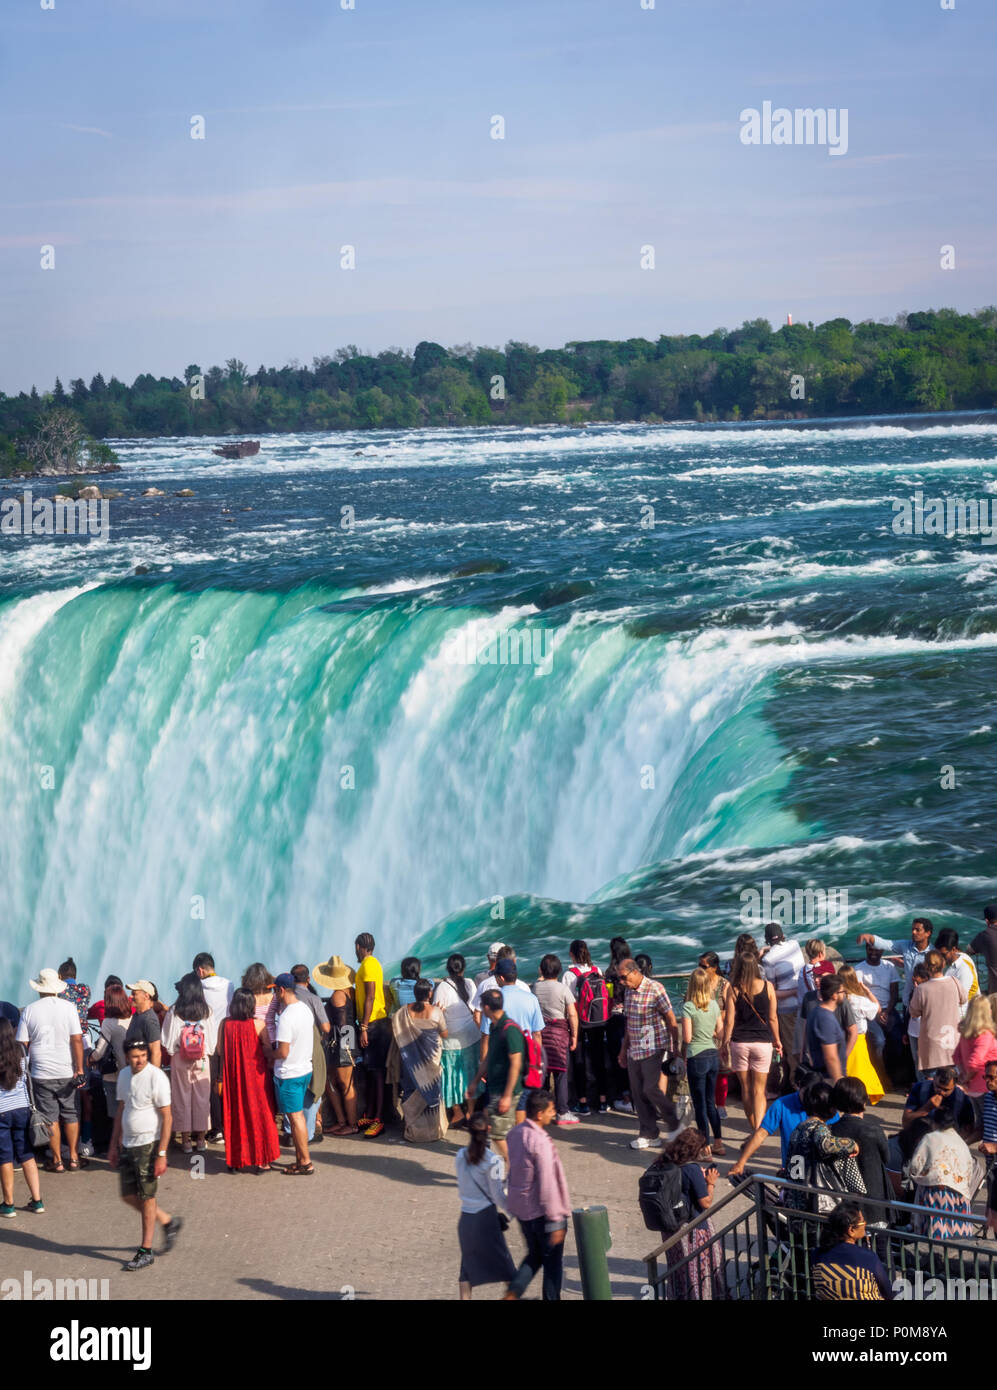 Les touristes regarder Horseshoe Falls à partir d'un point de vue à côté du Canada. Niagara Falls, Ontario, Canada. Cliché pris à partir d'une hauteur. Banque D'Images